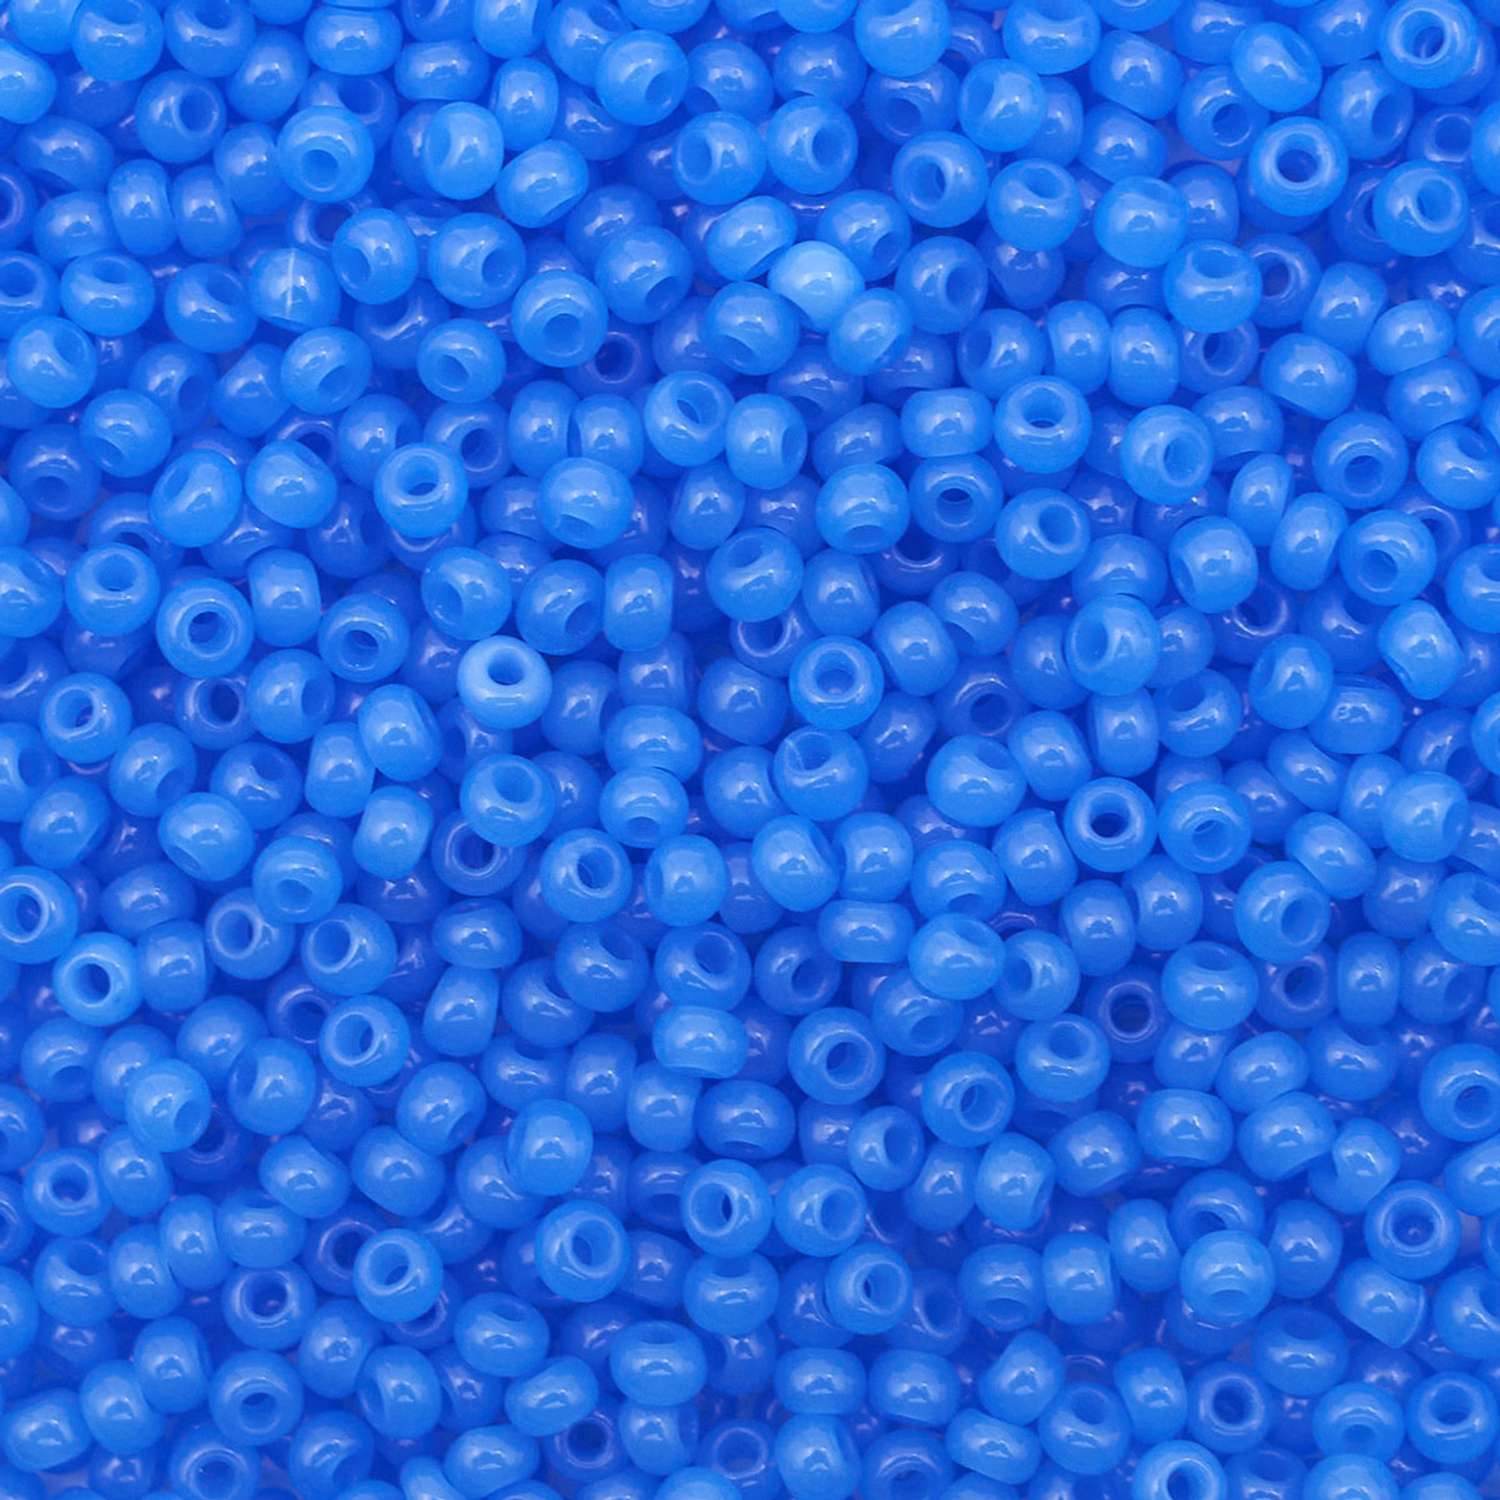 Бисер Preciosa чешский полупрозрачный голубой 10/0 20 гр Прециоза 32010 голубой - фото 1